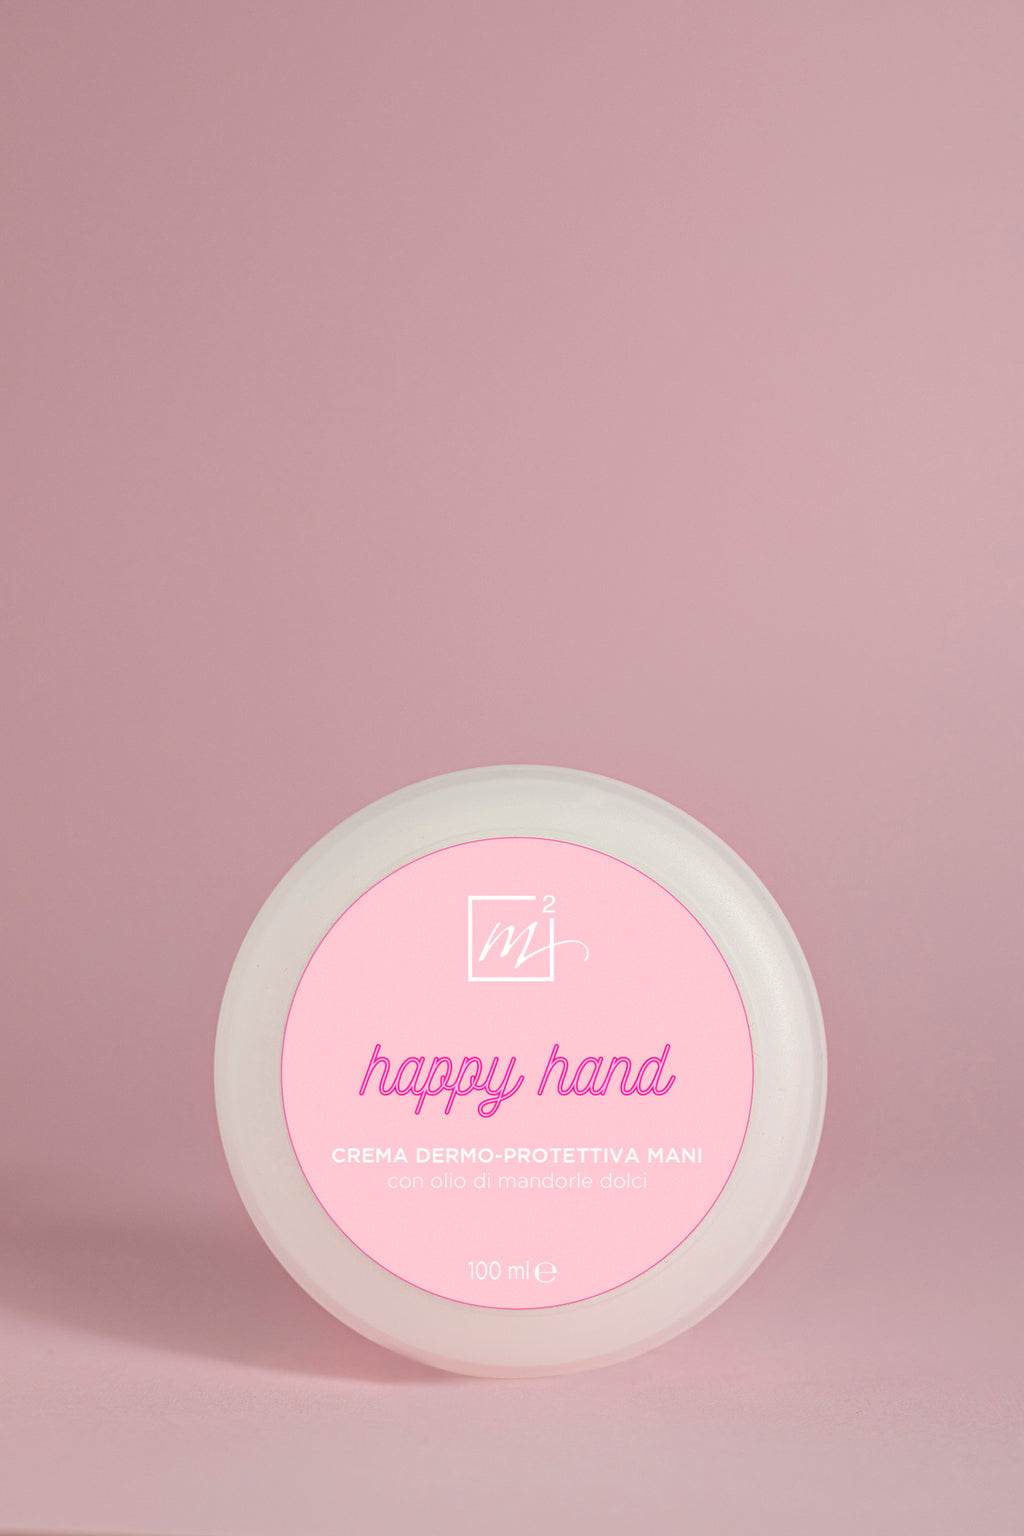 Happy hand